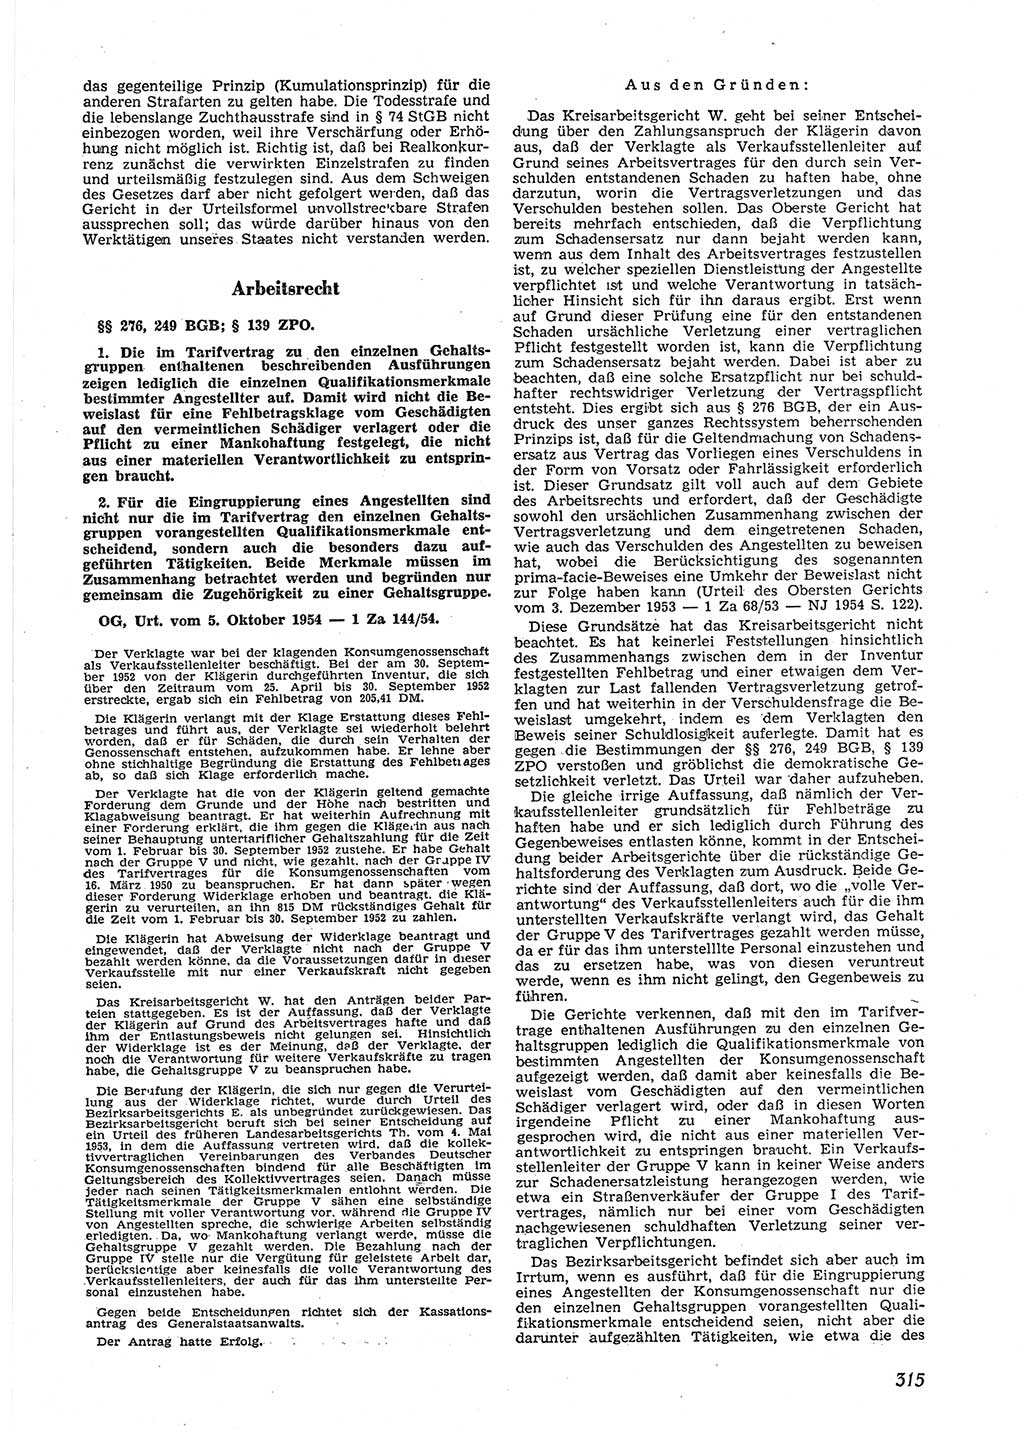 Neue Justiz (NJ), Zeitschrift für Recht und Rechtswissenschaft [Deutsche Demokratische Republik (DDR)], 9. Jahrgang 1955, Seite 315 (NJ DDR 1955, S. 315)